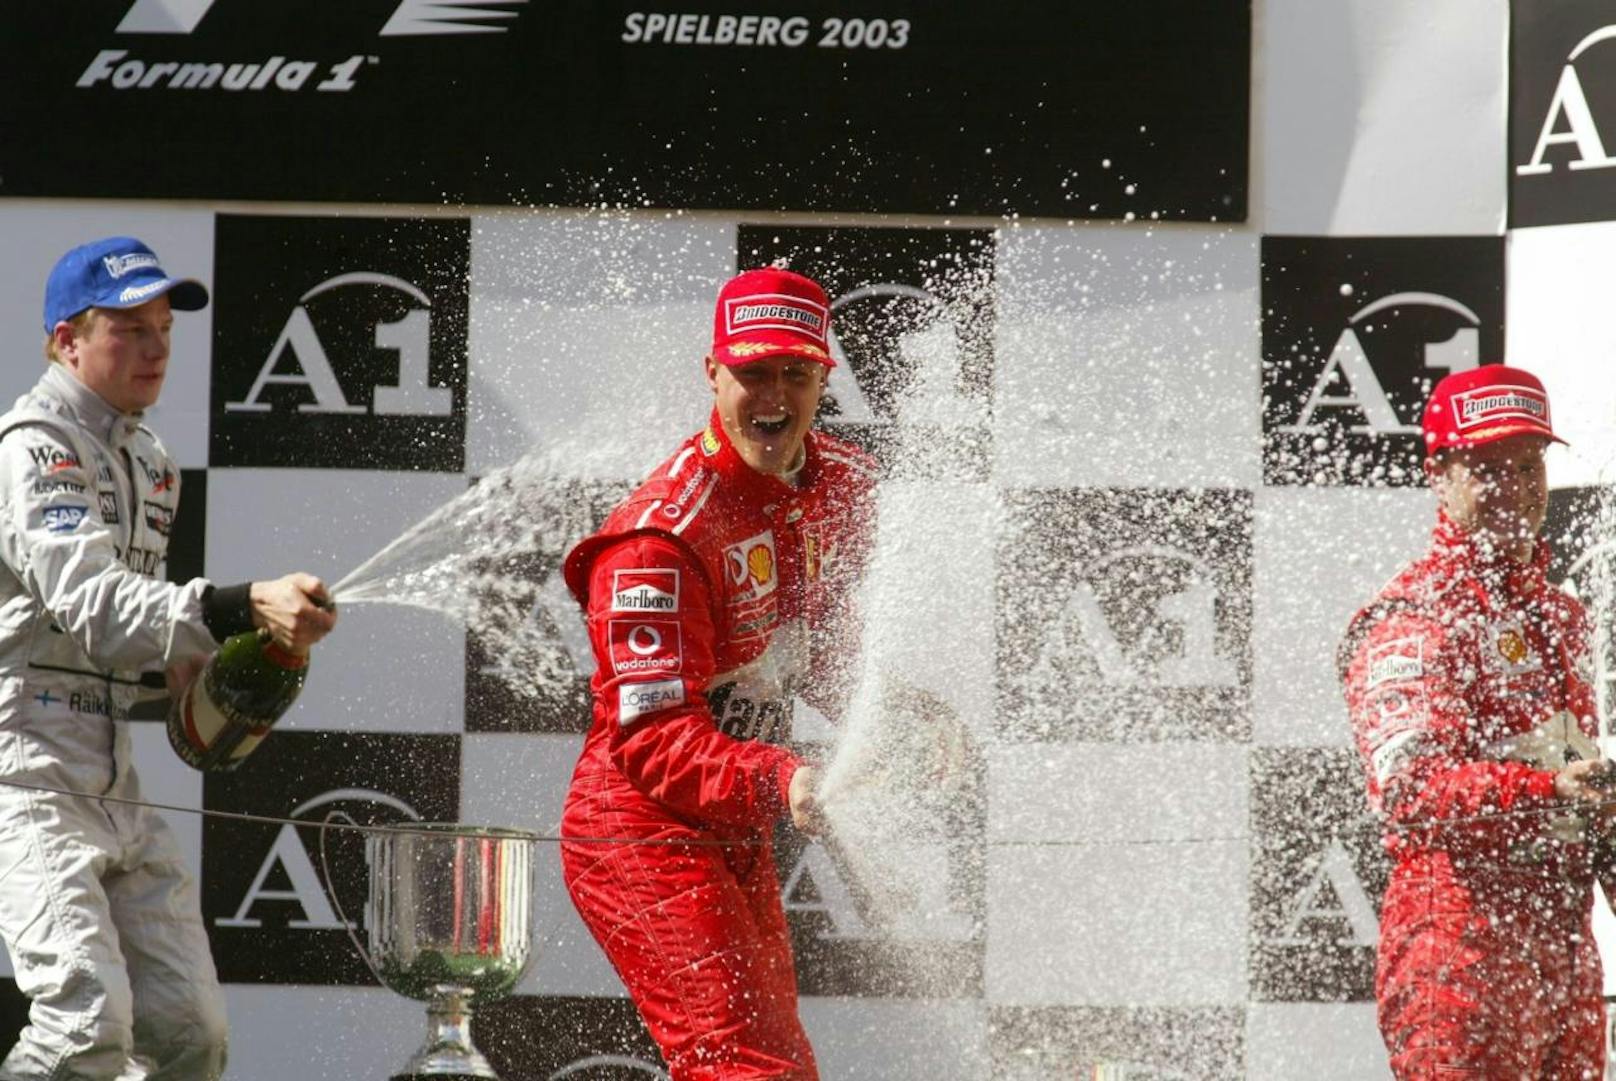 Nach nur sieben Rennen kehrte die Formel 1 Österreich wieder den Rücken. Den letzten Grand Prix 2003 sicherte sich Michael Schumacher. Kimi Räikkönen wurde vor Rubens Barrichello Zweiter. 